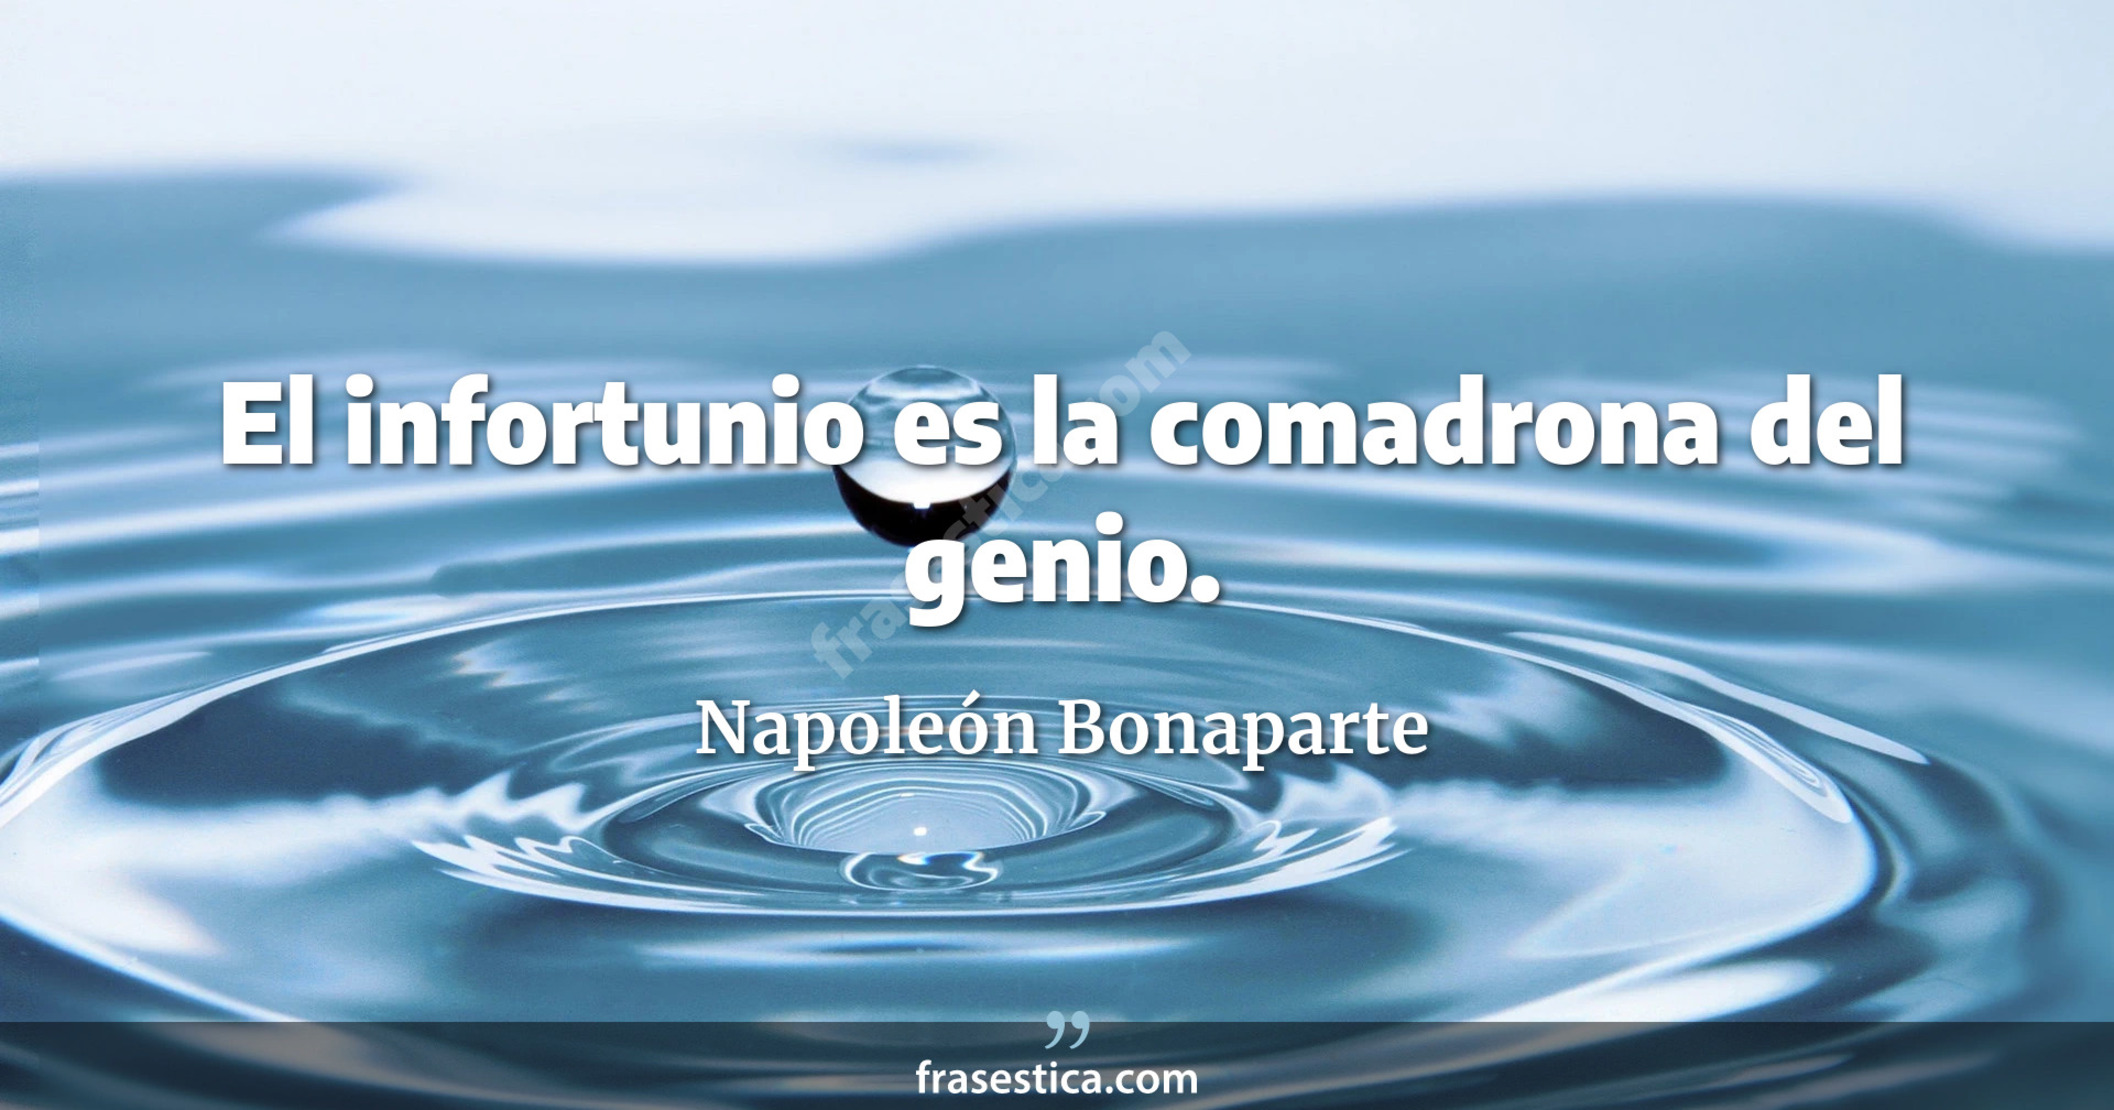 El infortunio es la comadrona del genio. - Napoleón Bonaparte